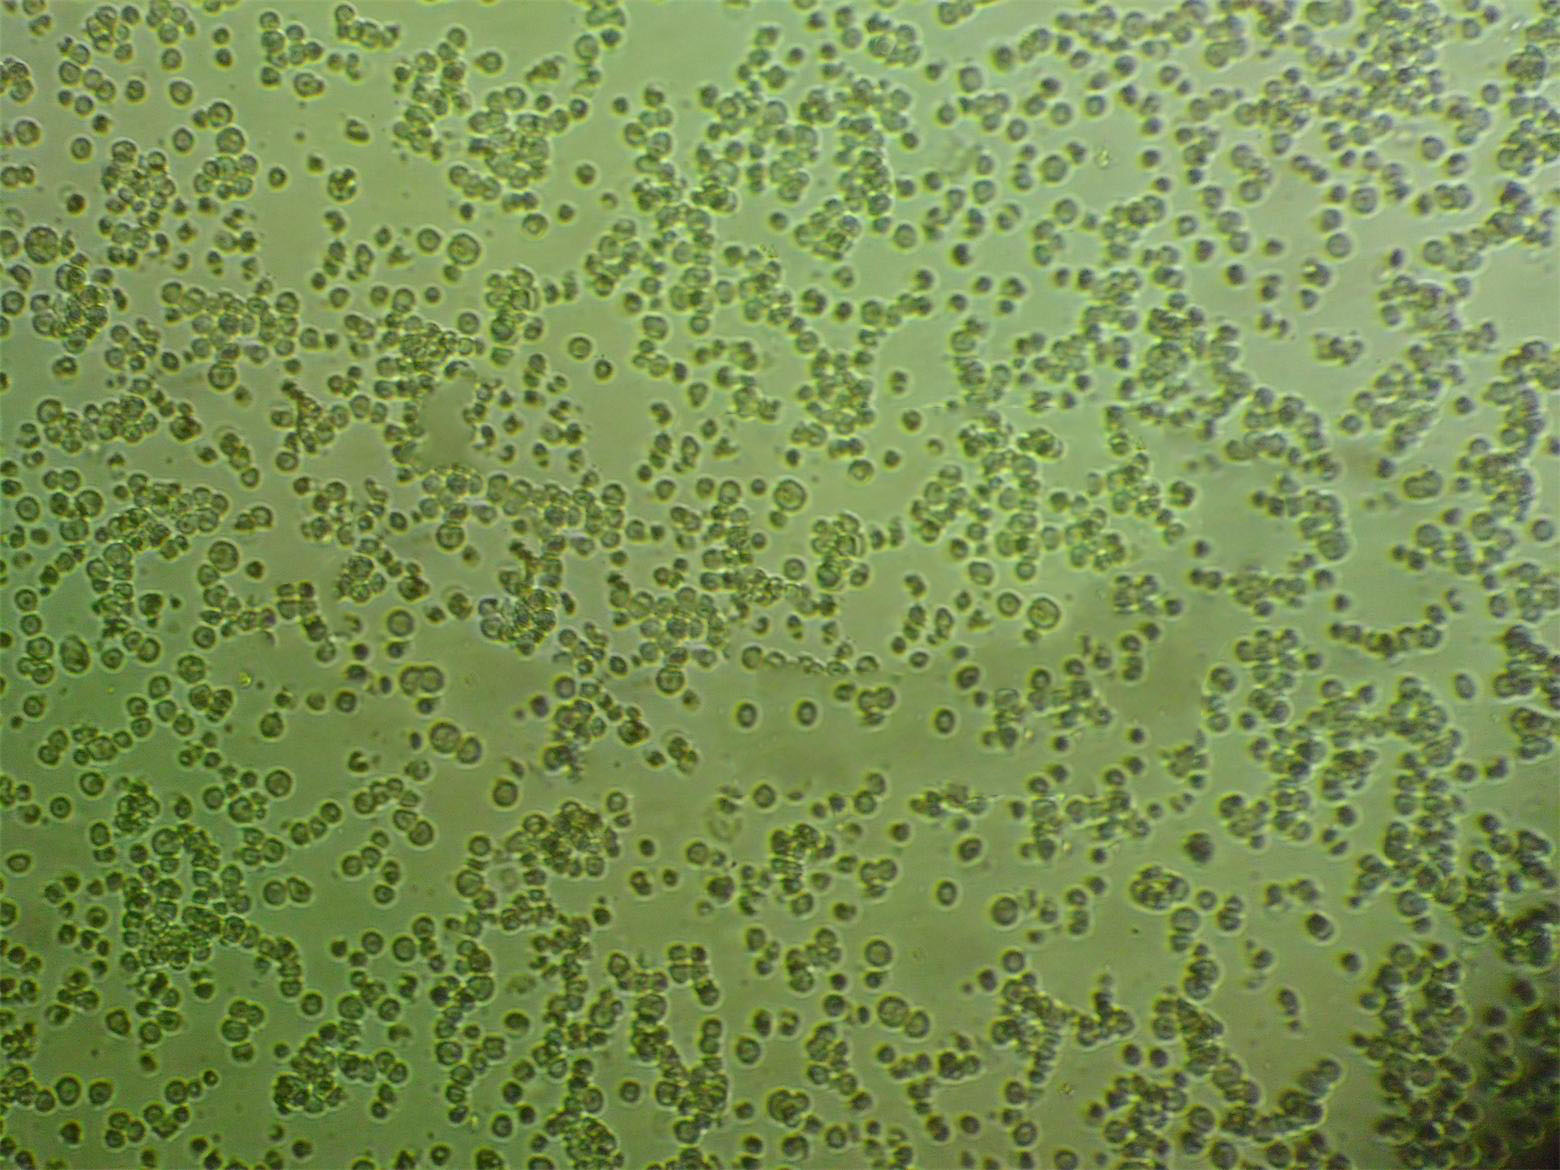 CCD-1112sk人包皮成纤维复苏细胞(附STR鉴定报告),CCD-1112sk